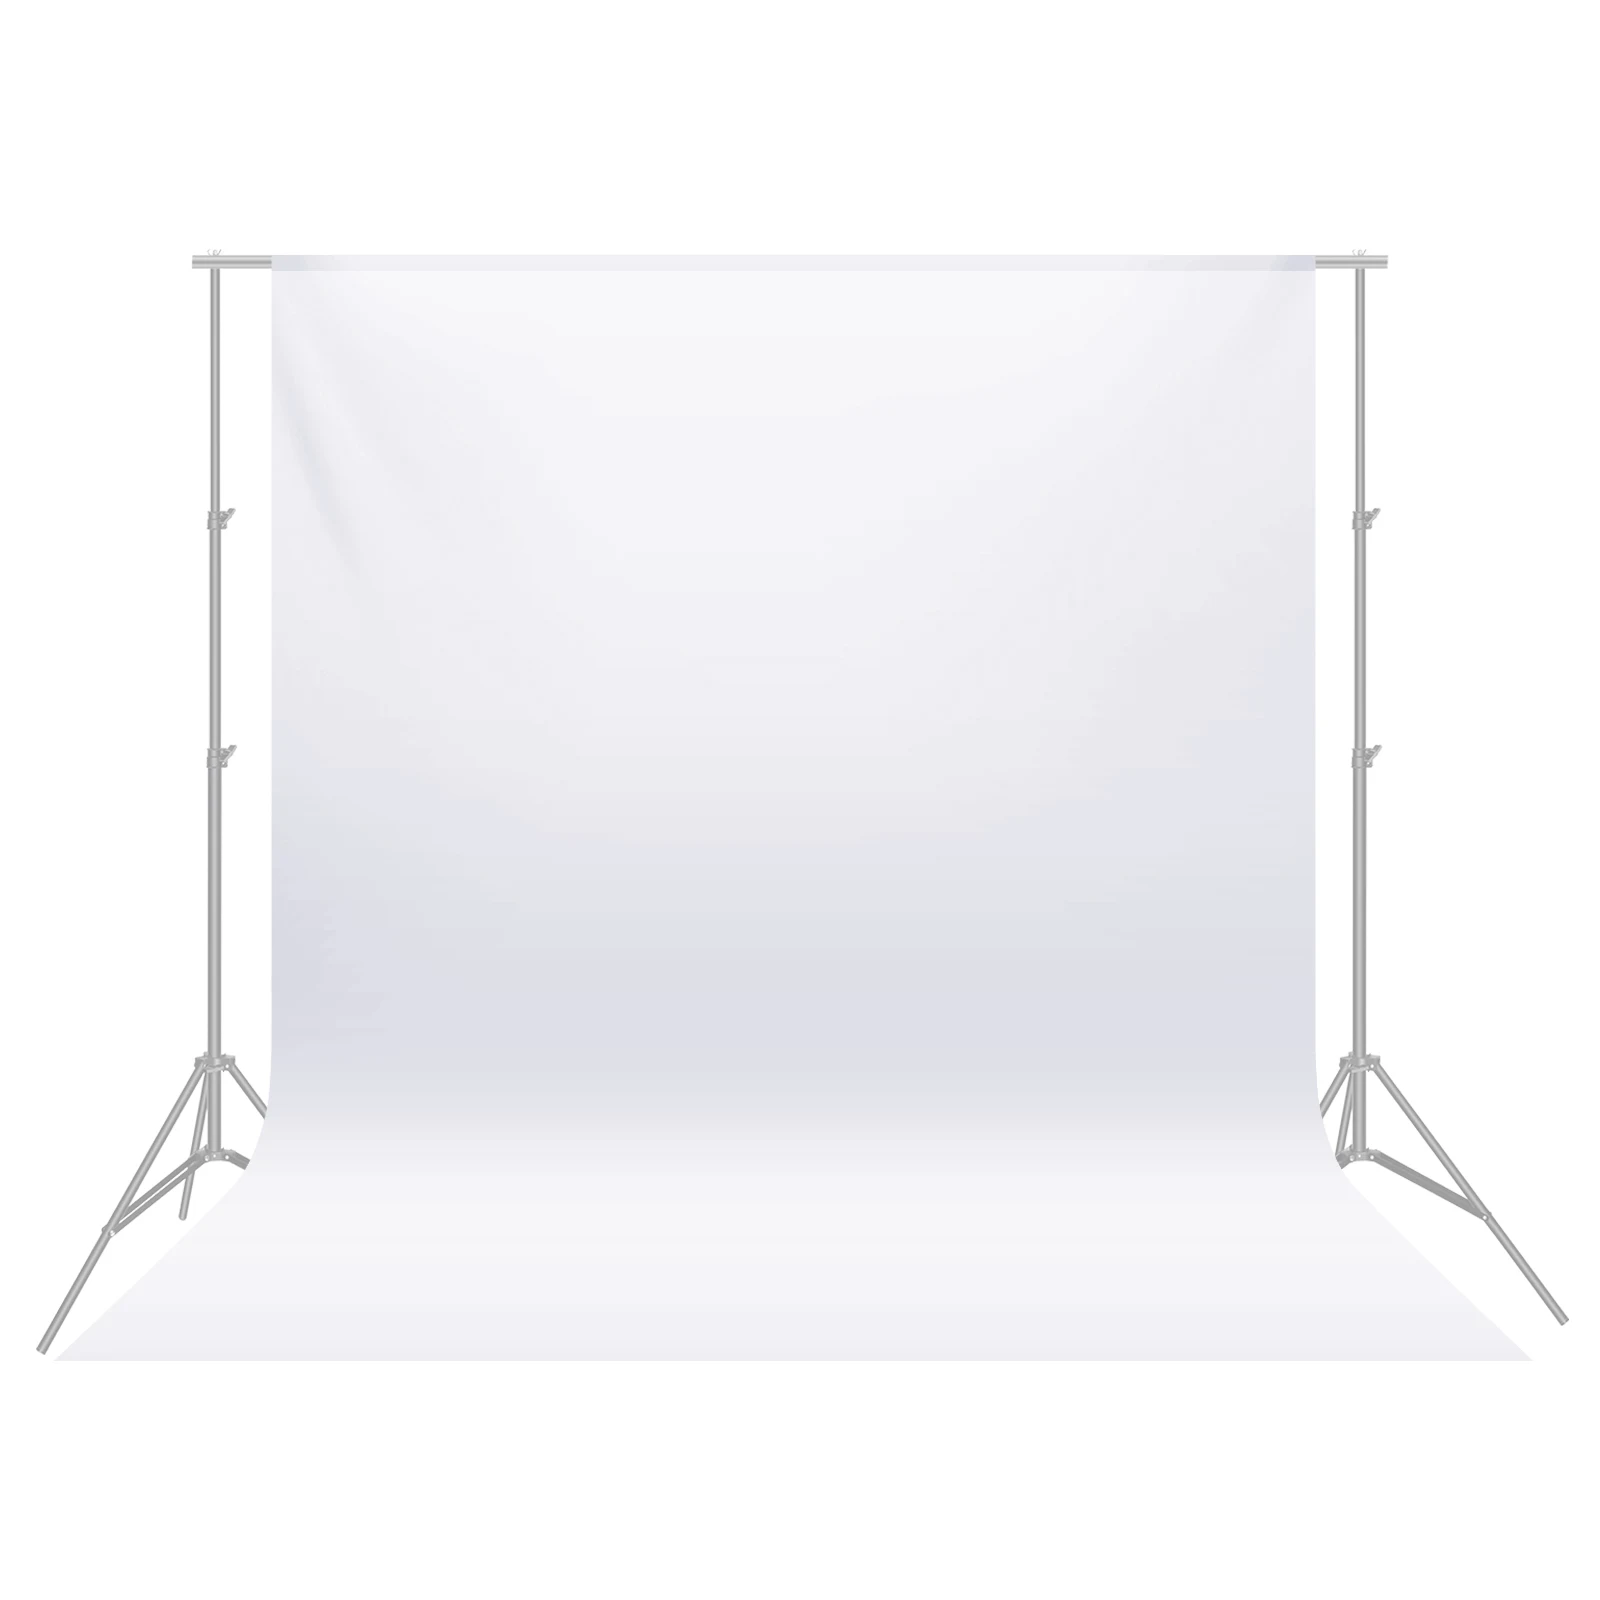 Studio phông vải trắng 6m: Nếu bạn đang tìm kiếm một không gian chụp ảnh chuyên nghiệp cho dự án của mình, thì hãy ghé thăm ngay Studio phông vải trắng 6m. Với kích thước lớn của phông vải trắng, bạn sẽ có đủ không gian để tạo ra những bức ảnh đẹp và ấn tượng.